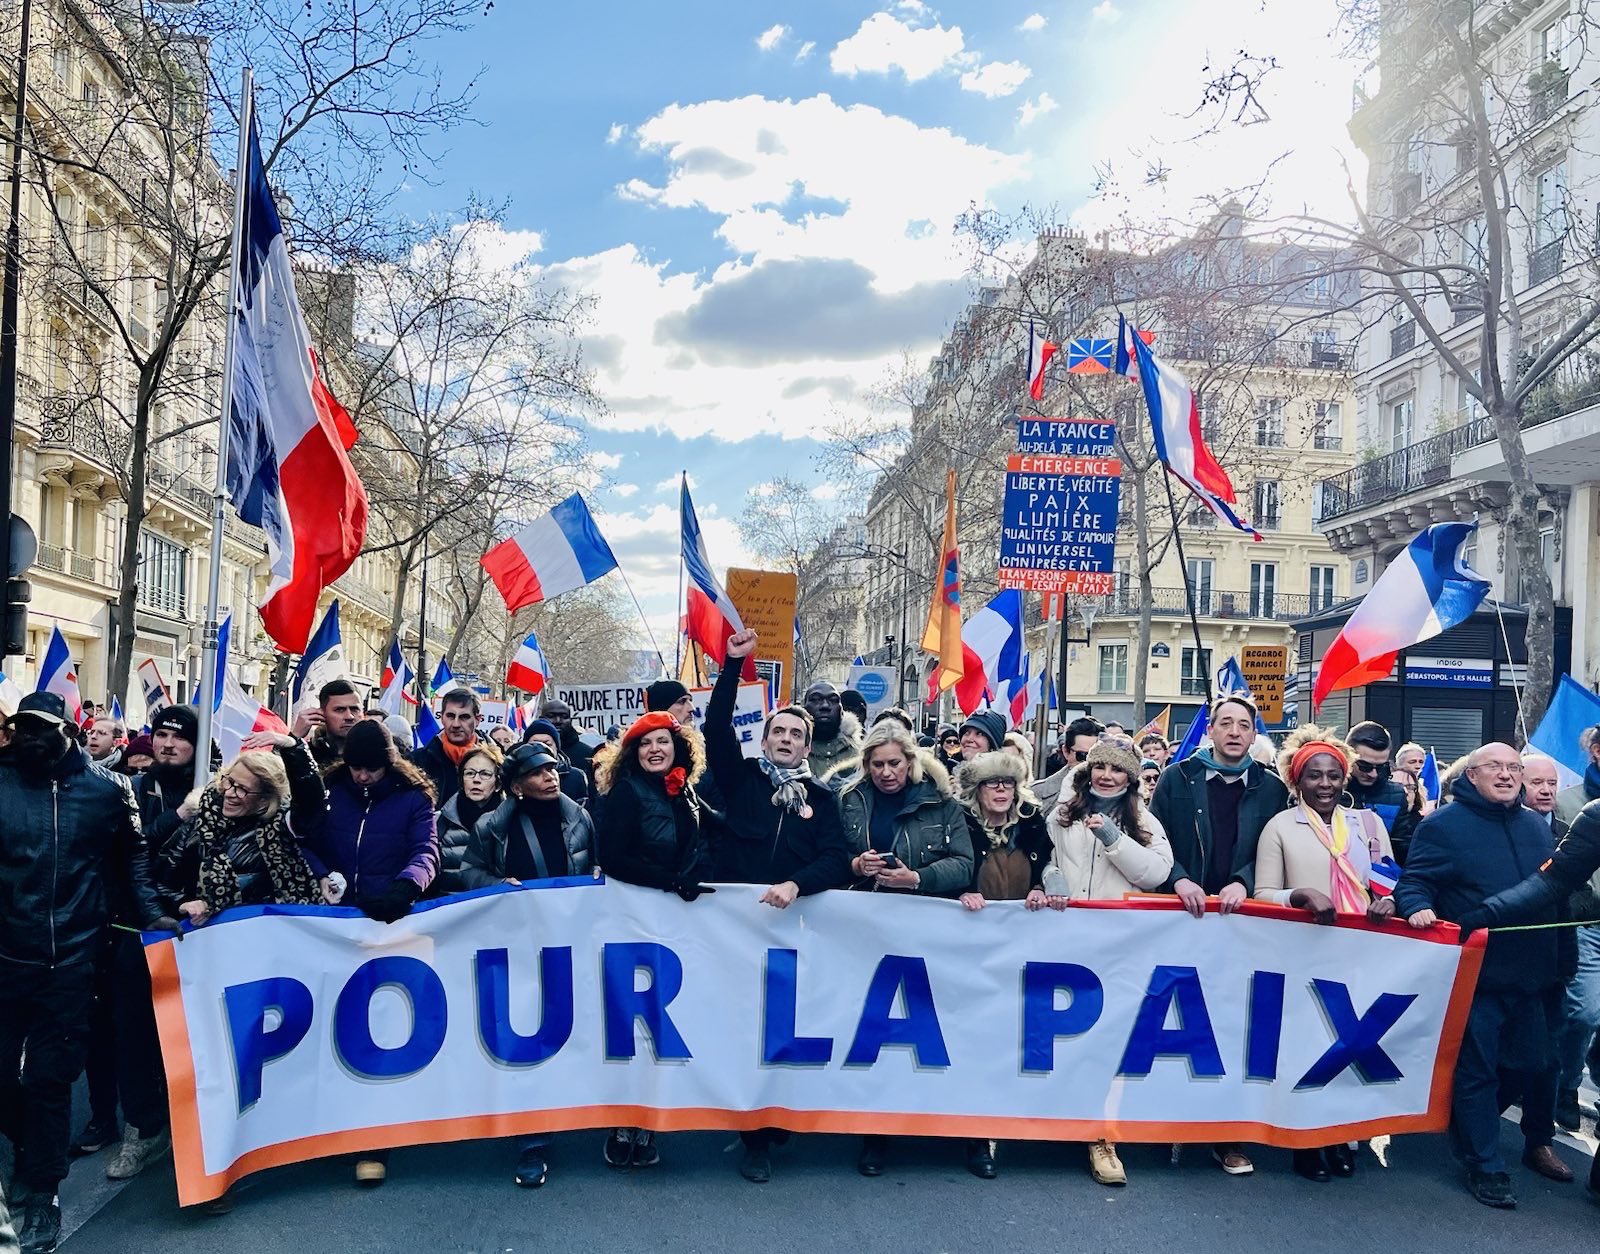 “黄背心”来到巴黎集会庆祝抗议运动满三个月 - 2019年2月17日, 俄罗斯卫星通讯社